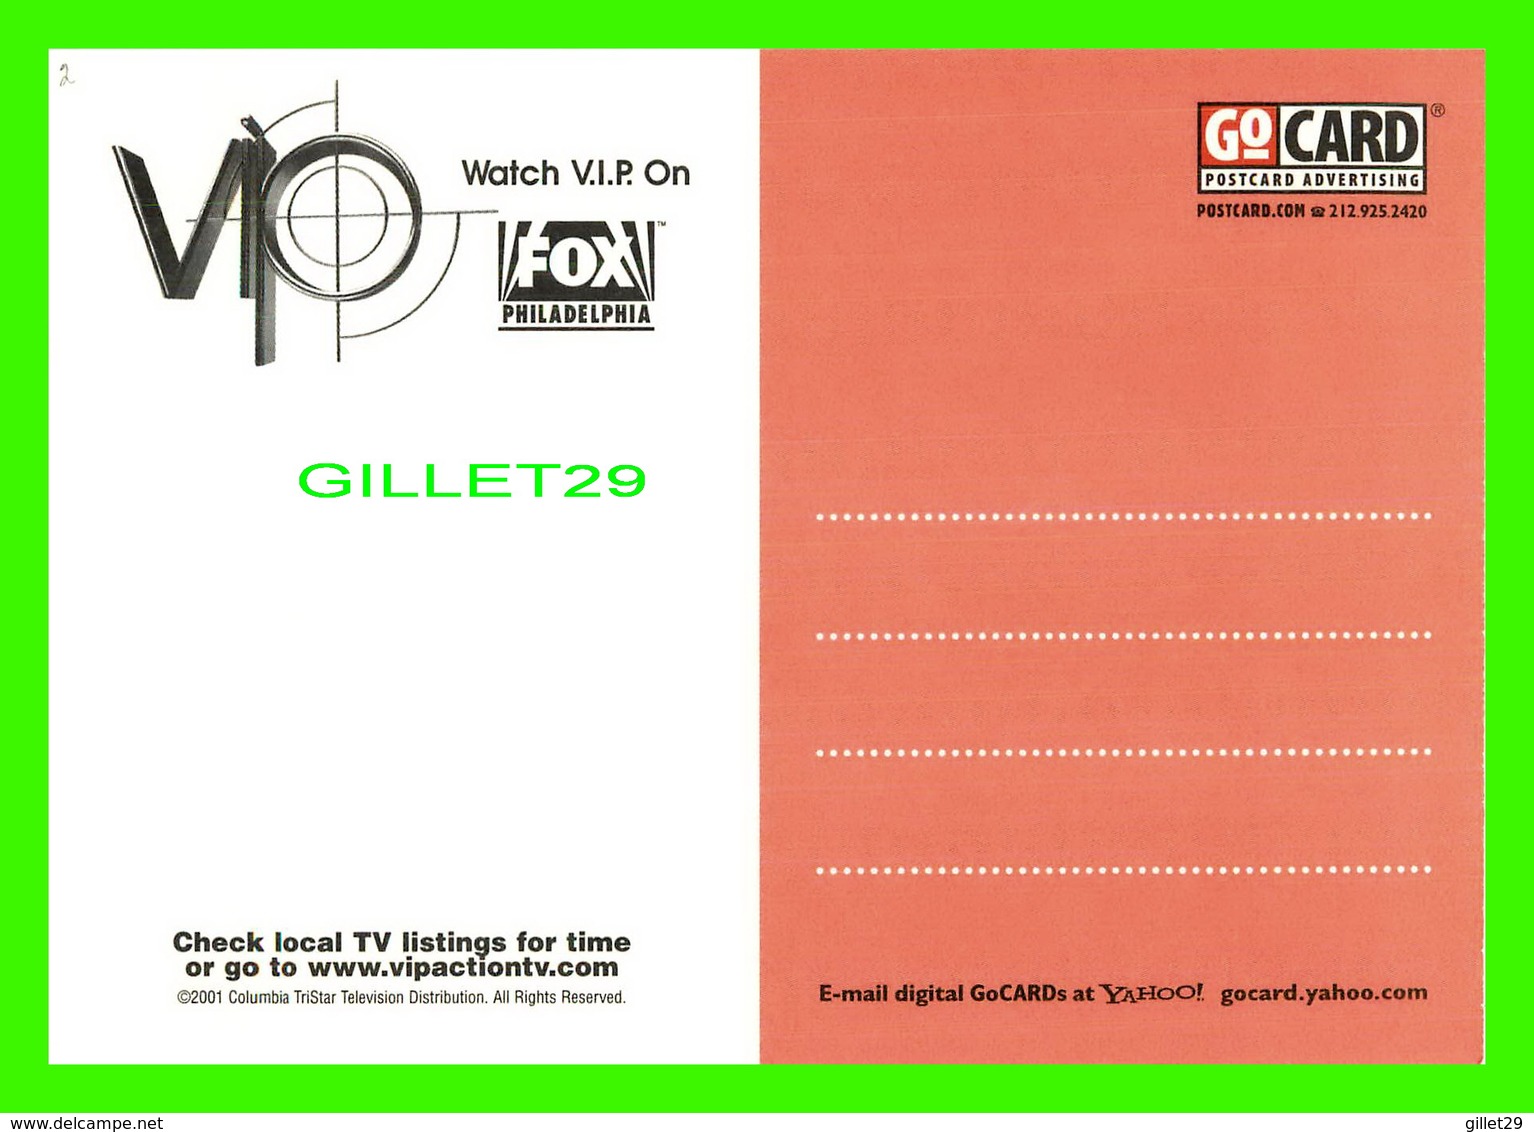 ADVERTISING, PUBLICITÉ - VIP STARRING PAMELA ANDERSON - WATCH IT ON FOX PHILADELPHIA IN 2001 - - Publicité